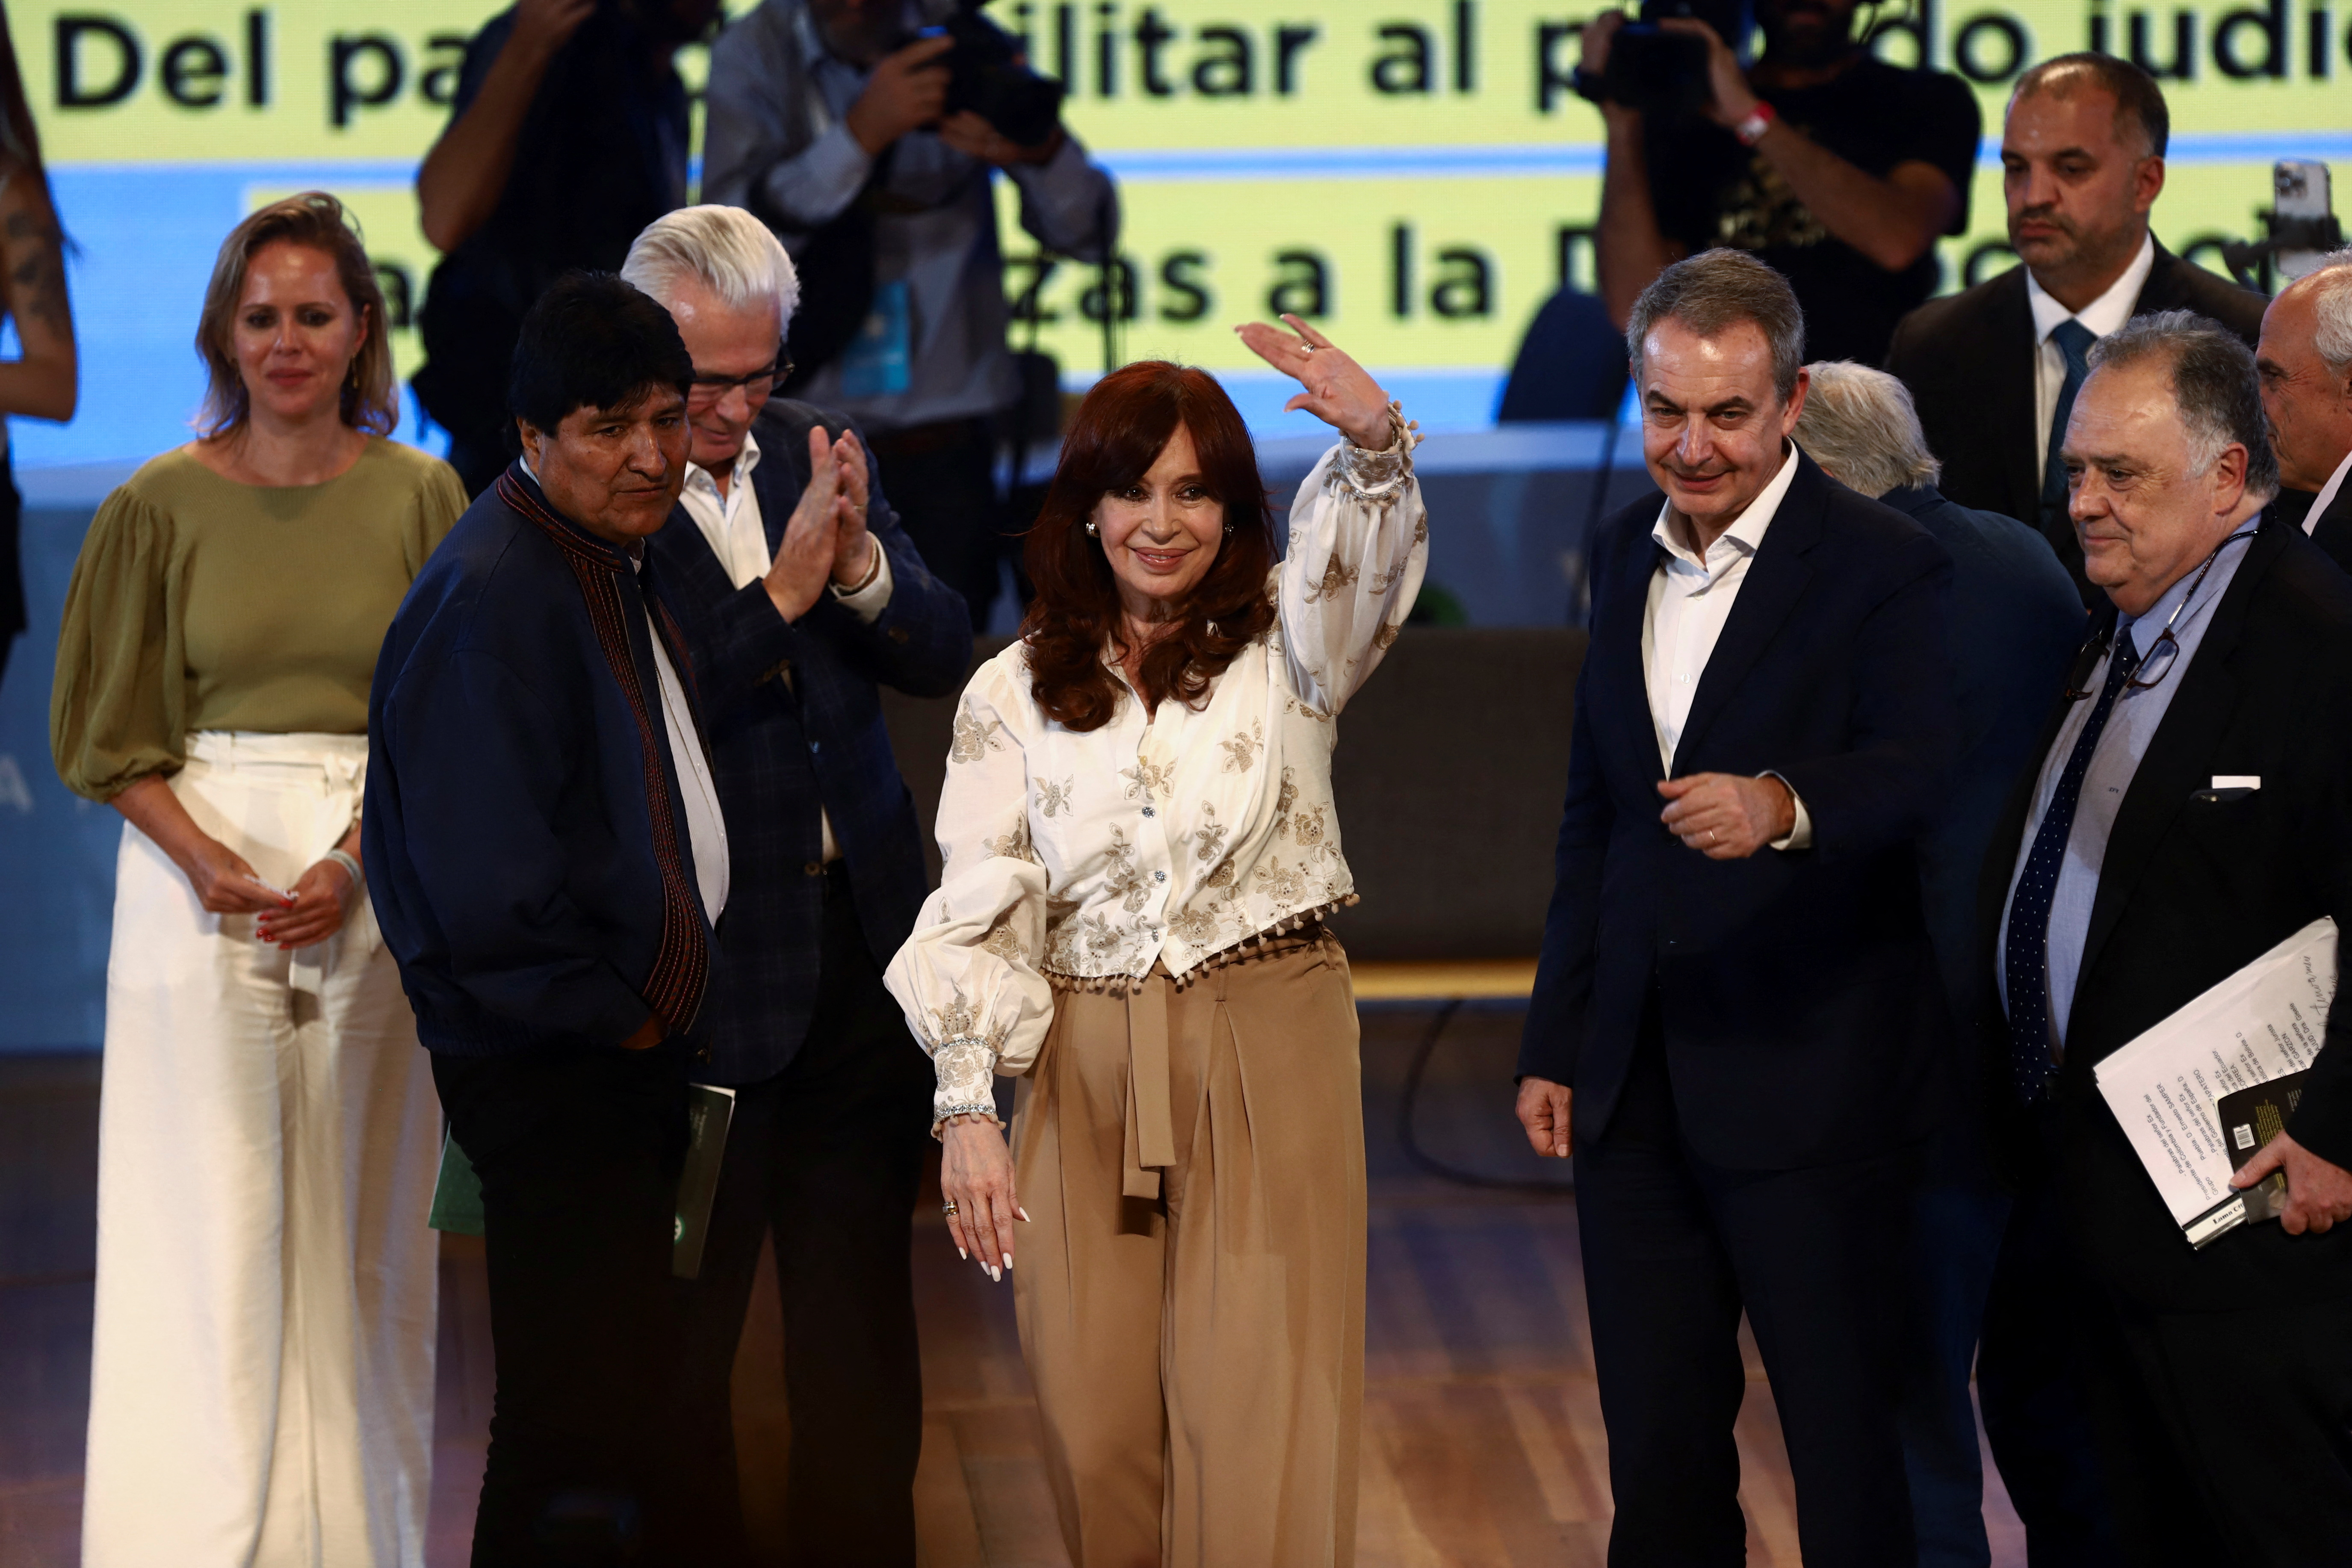 La aceptación de las PASO por parte del kirchnerismo es una señal más de que Cristina Kirchner no competiría por la presidencia (REUTERS/Matias Baglietto)